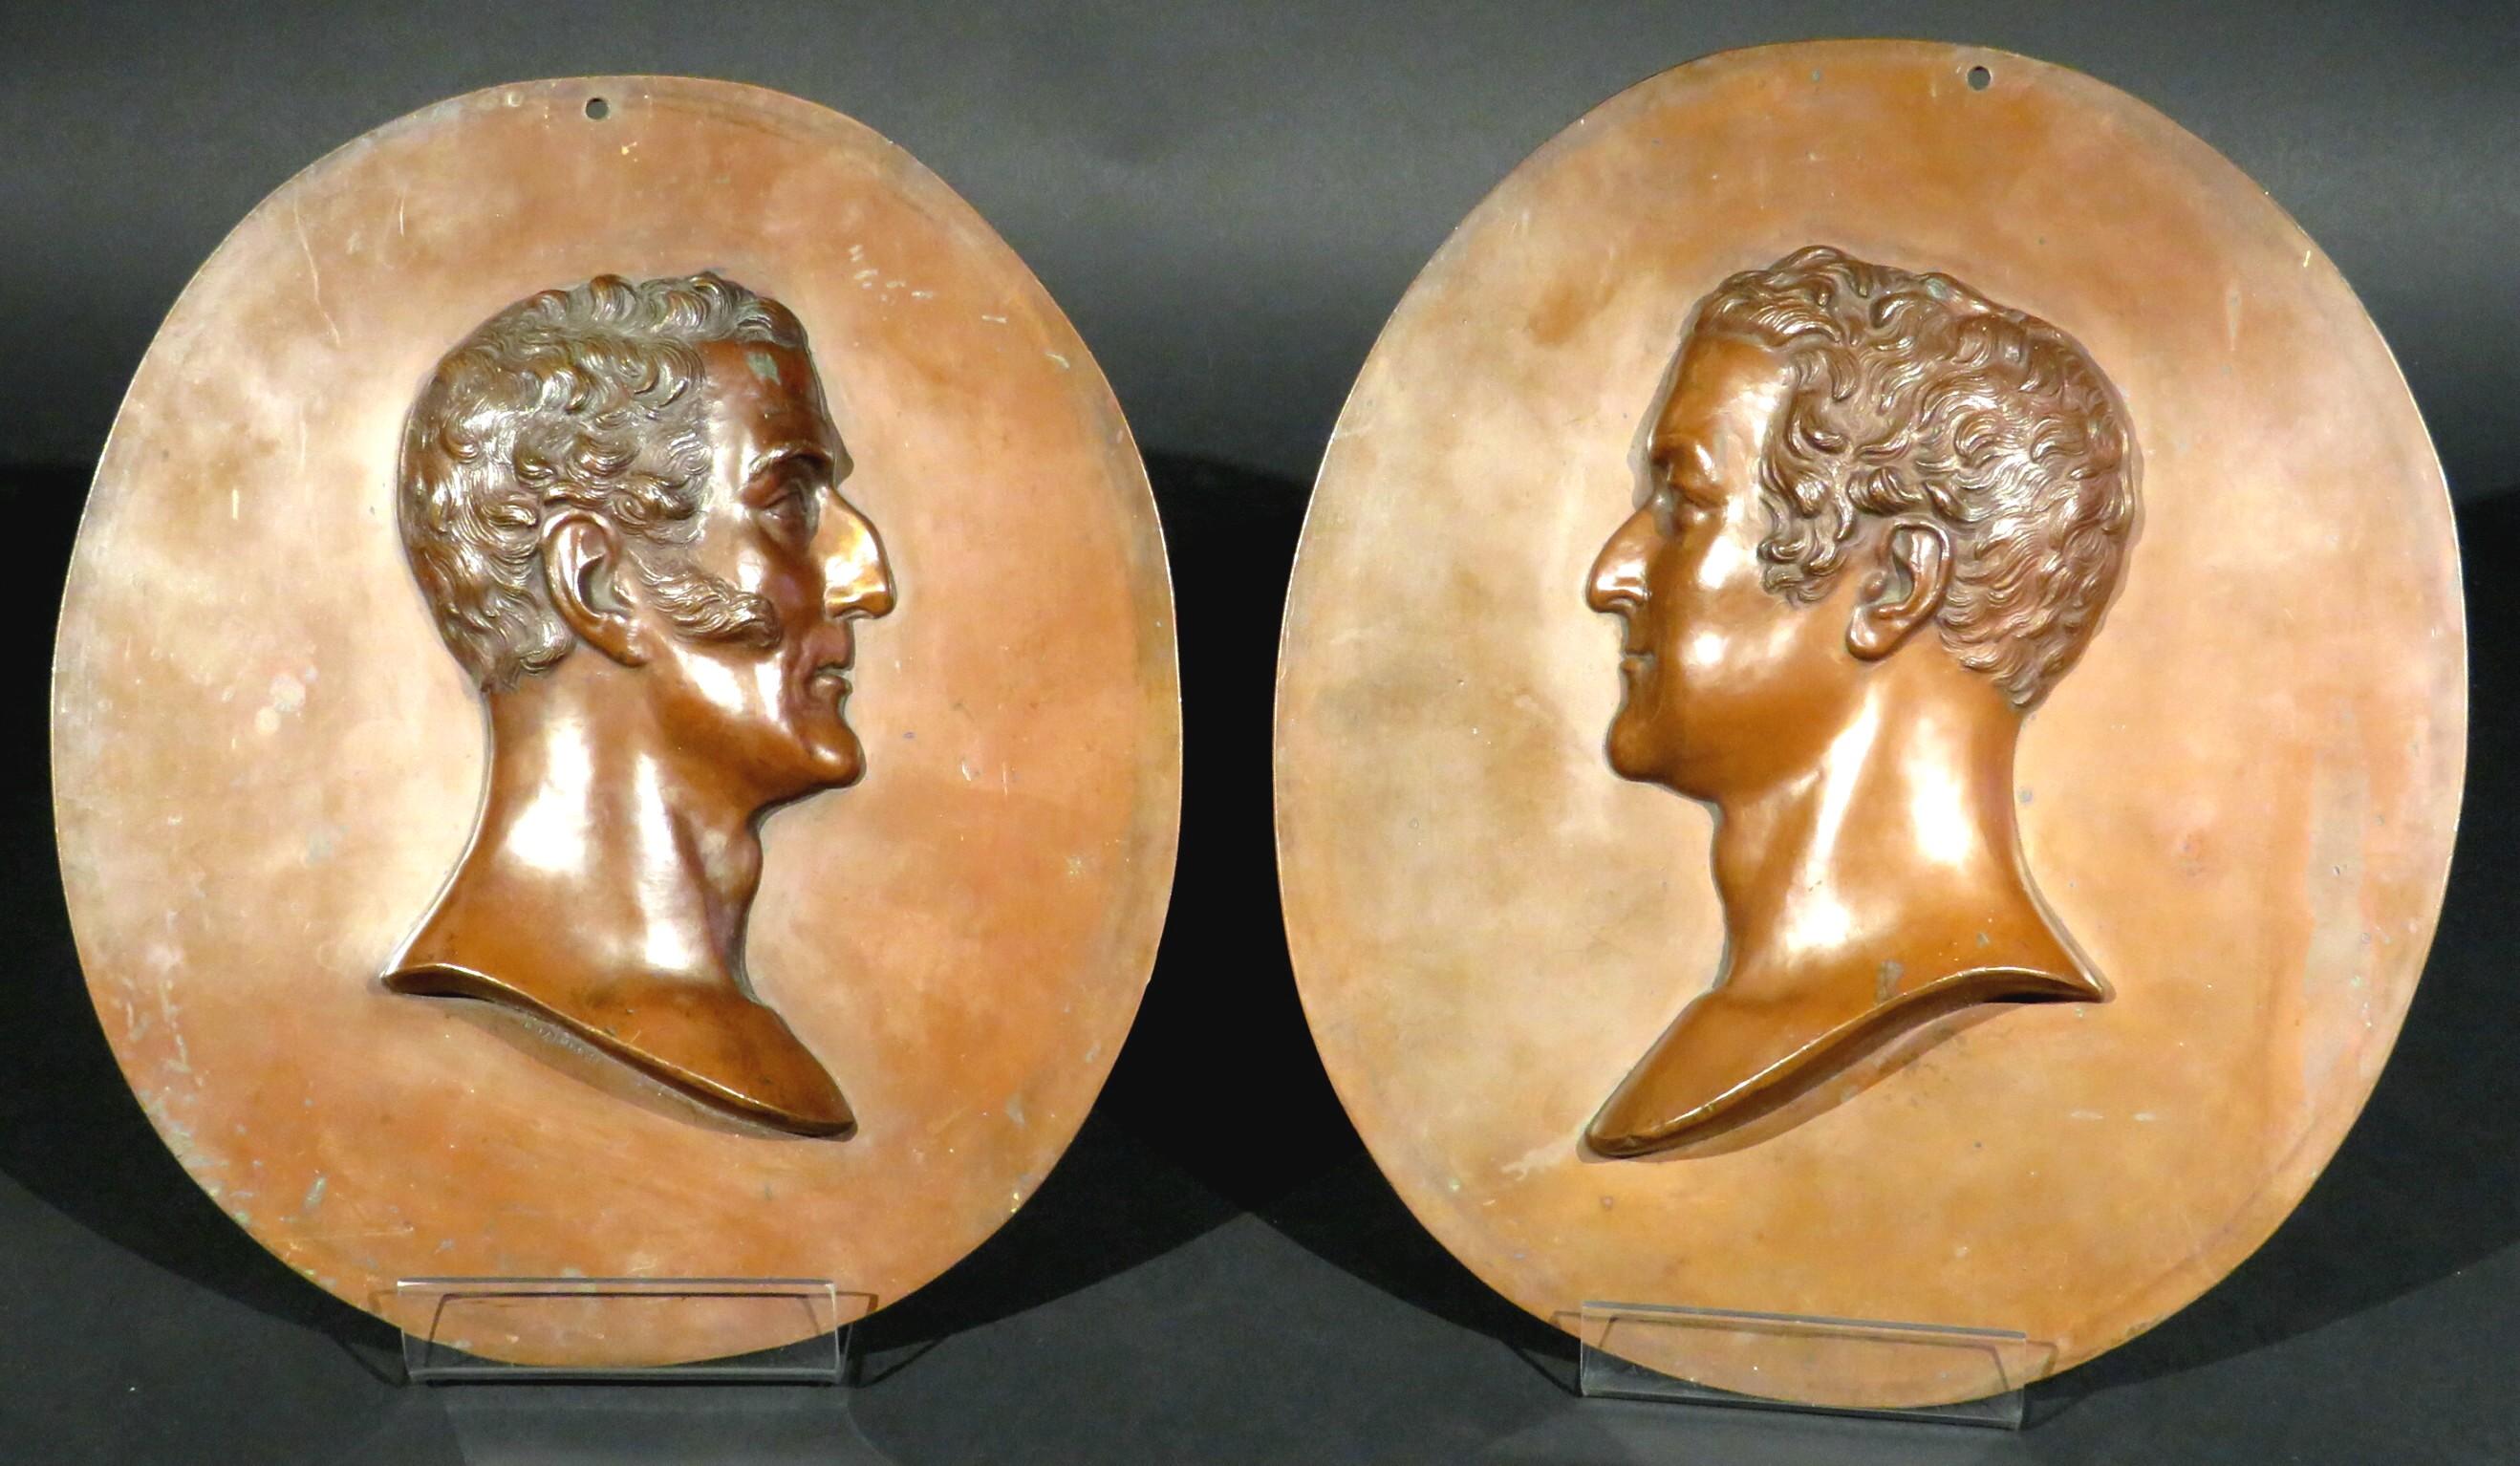 Ein sehr hübsches und beeindruckendes Paar Relief-Porträtbüsten aus Kupfer, die links die Porträtbüsten von Arthur Wellesley, 1. Herzog von Wellington (1769-1852), und rechts von Napoleon Bonaparte (1769-1821) darstellen. Die Abmessungen sind